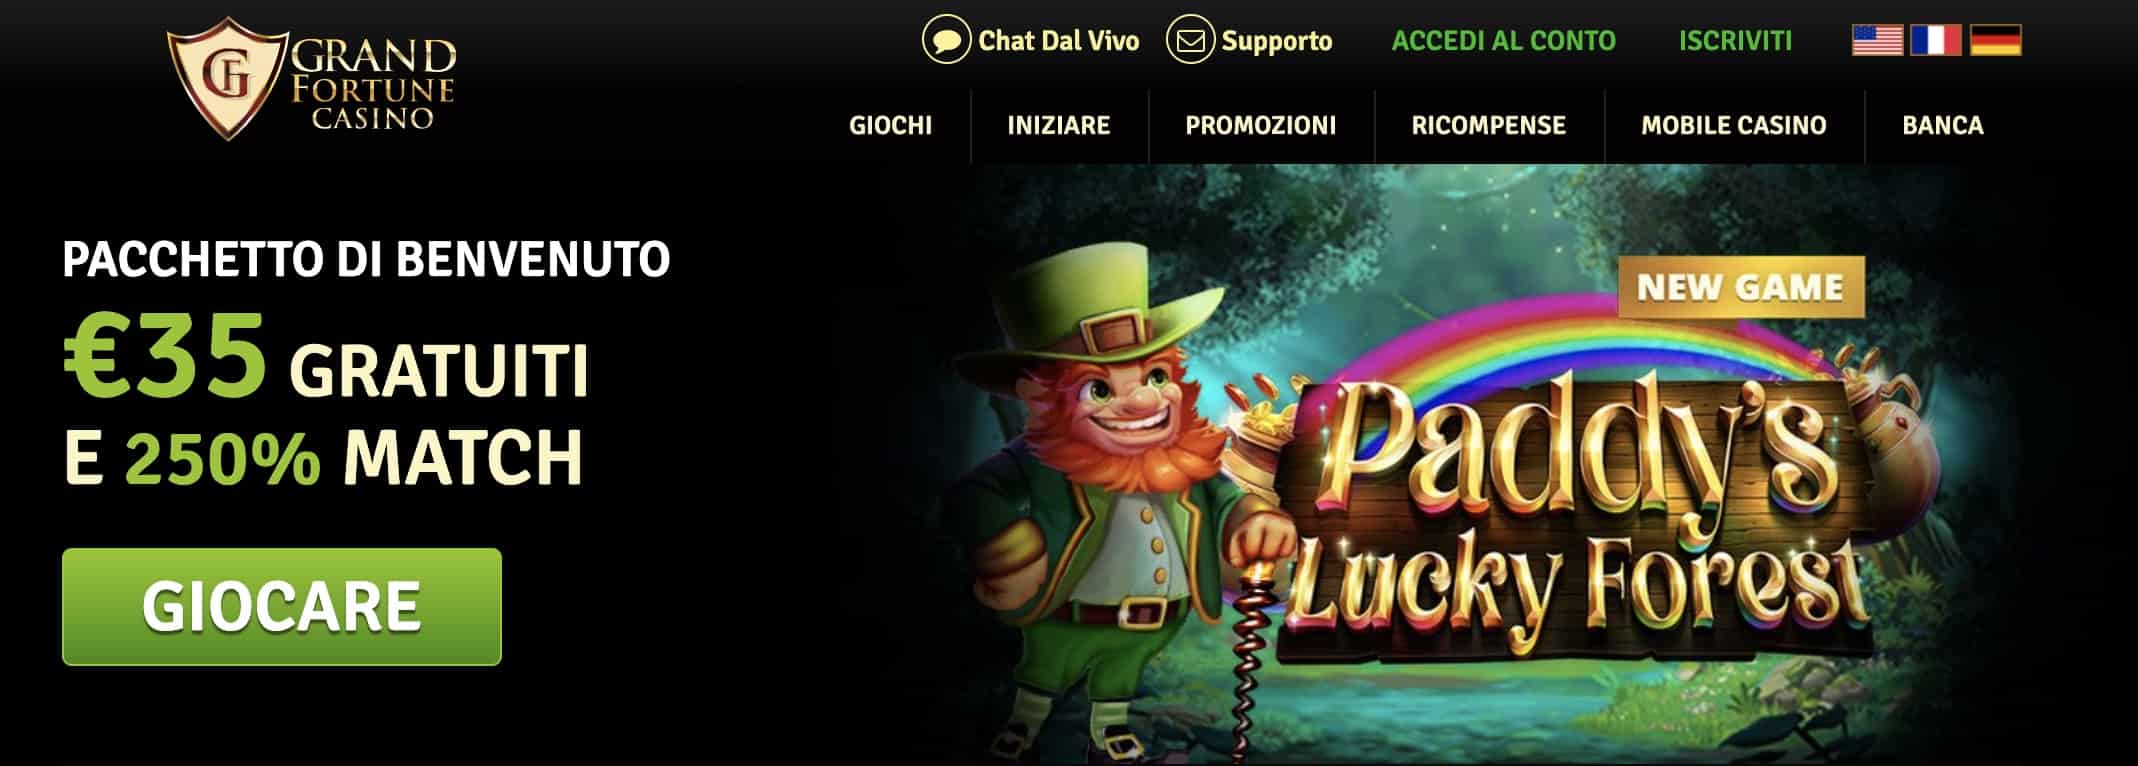 Grand Fortune Giochi homepage